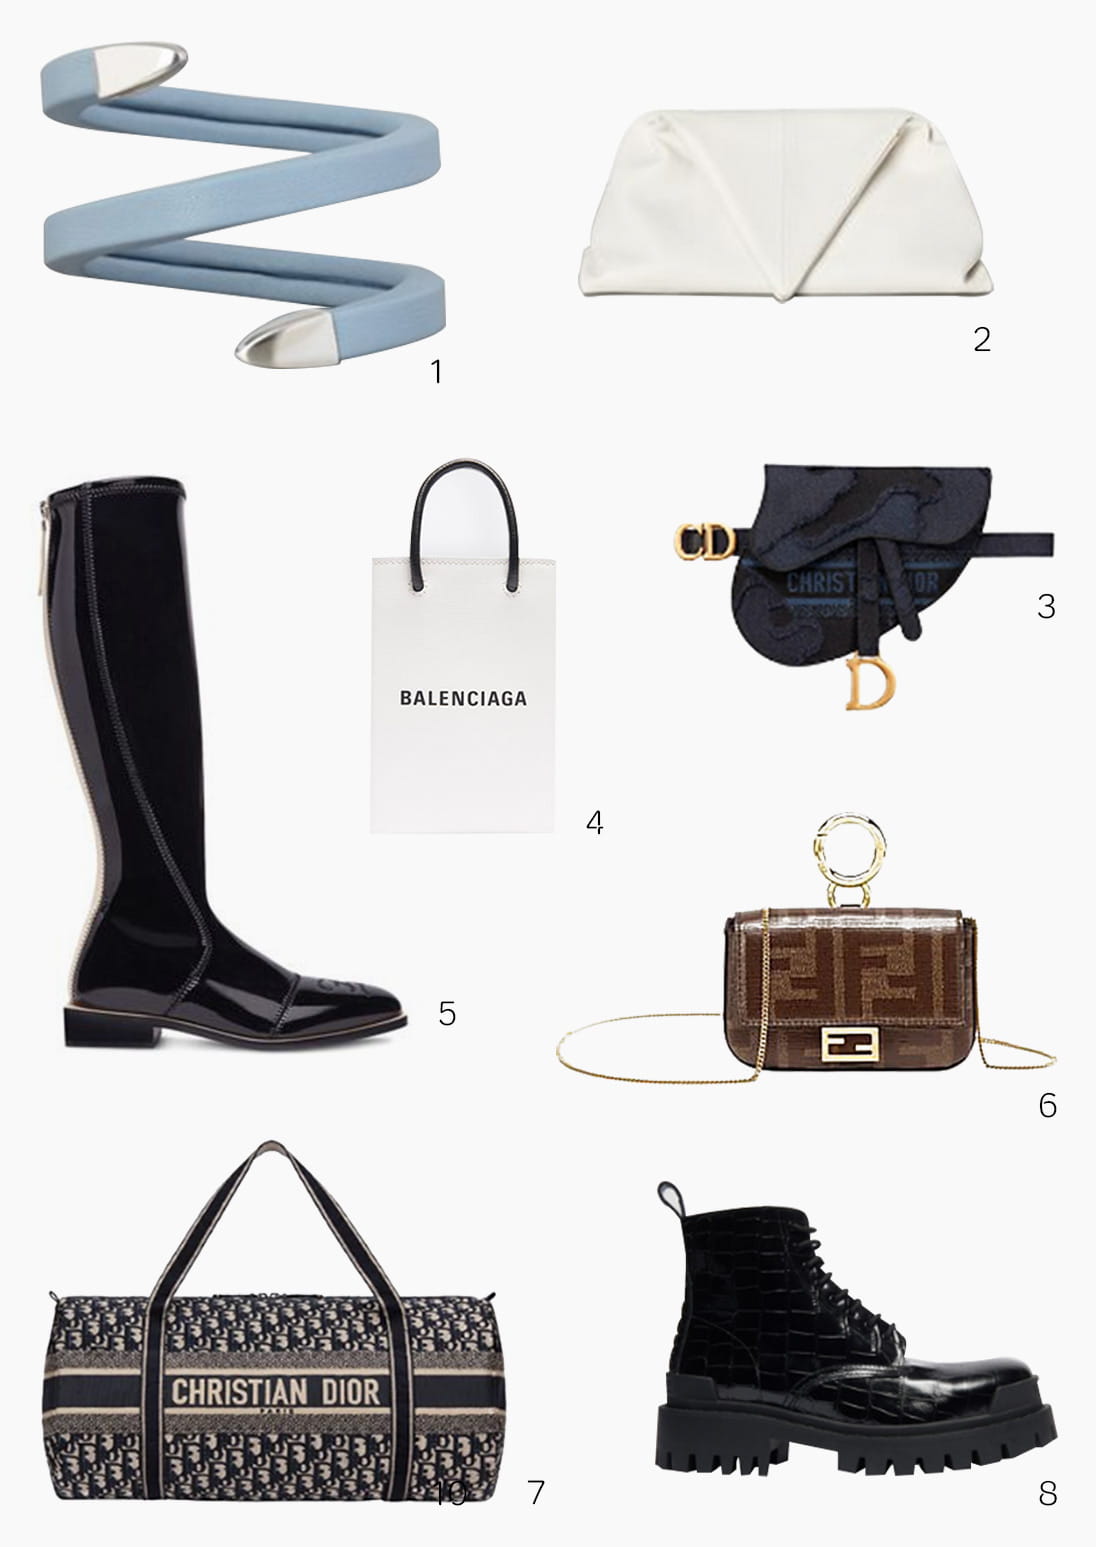 Instagrammable accessories from Balenciaga, Dior, Fendi and Bottega Veneta